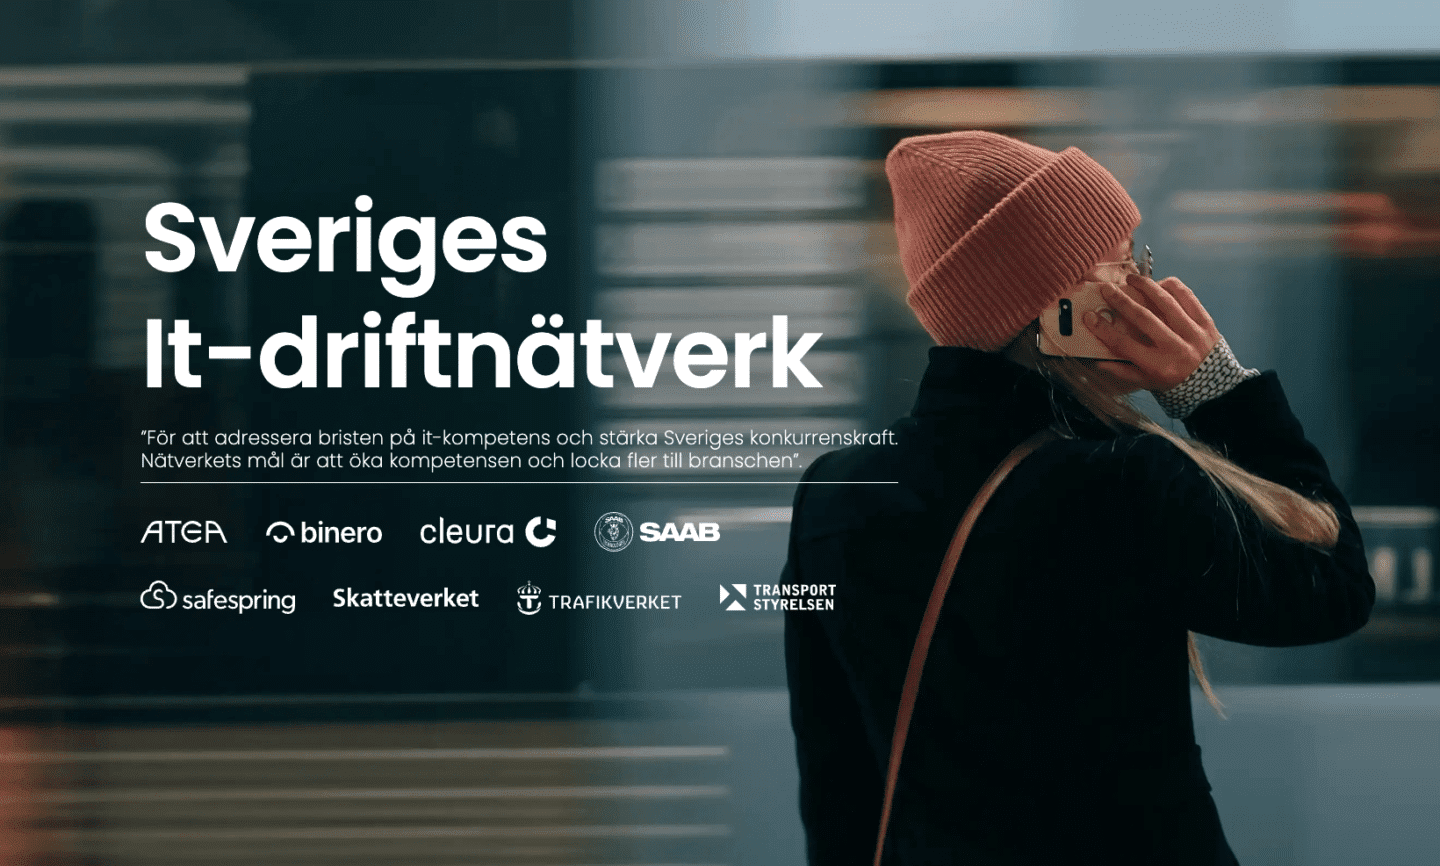 Woman in a beanie talking on the phone. Message: Swedish IT Operations Network. Kvinna i mössa pratar i telefon. Meddelande: Sveriges IT-driftnätverk.